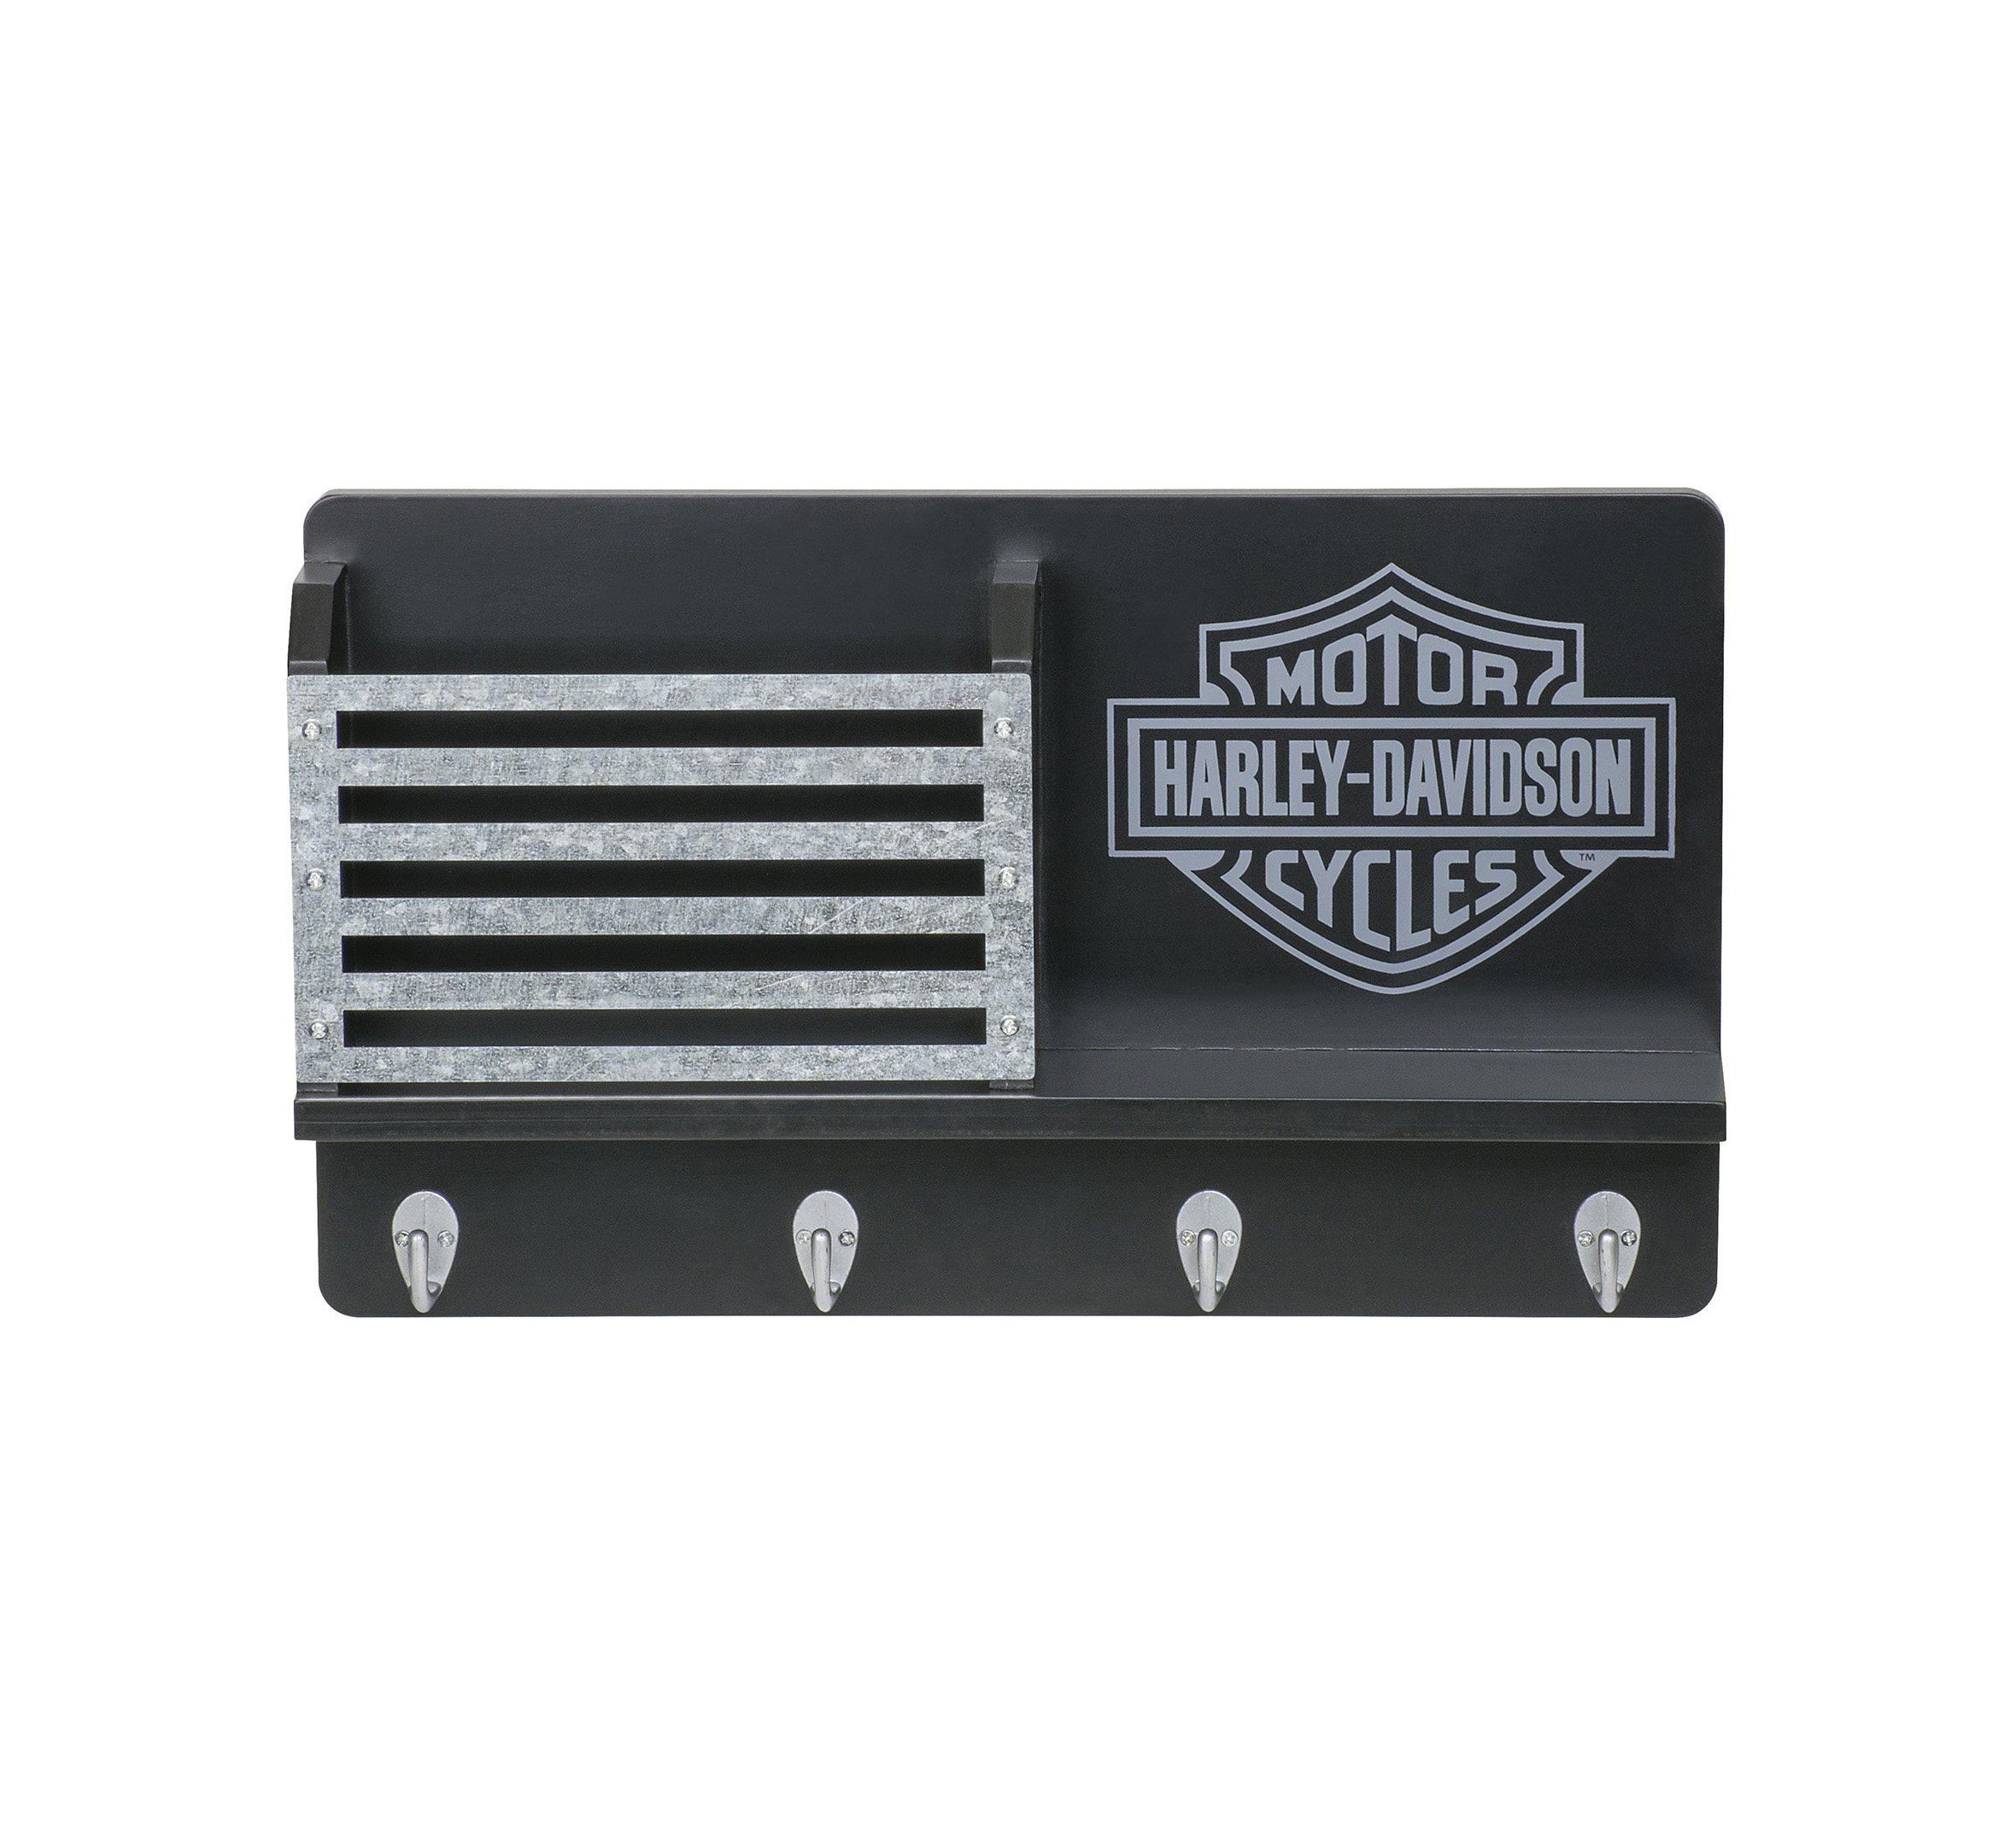 Bar u0026 Shield Key Rack | Harley-Davidson USA